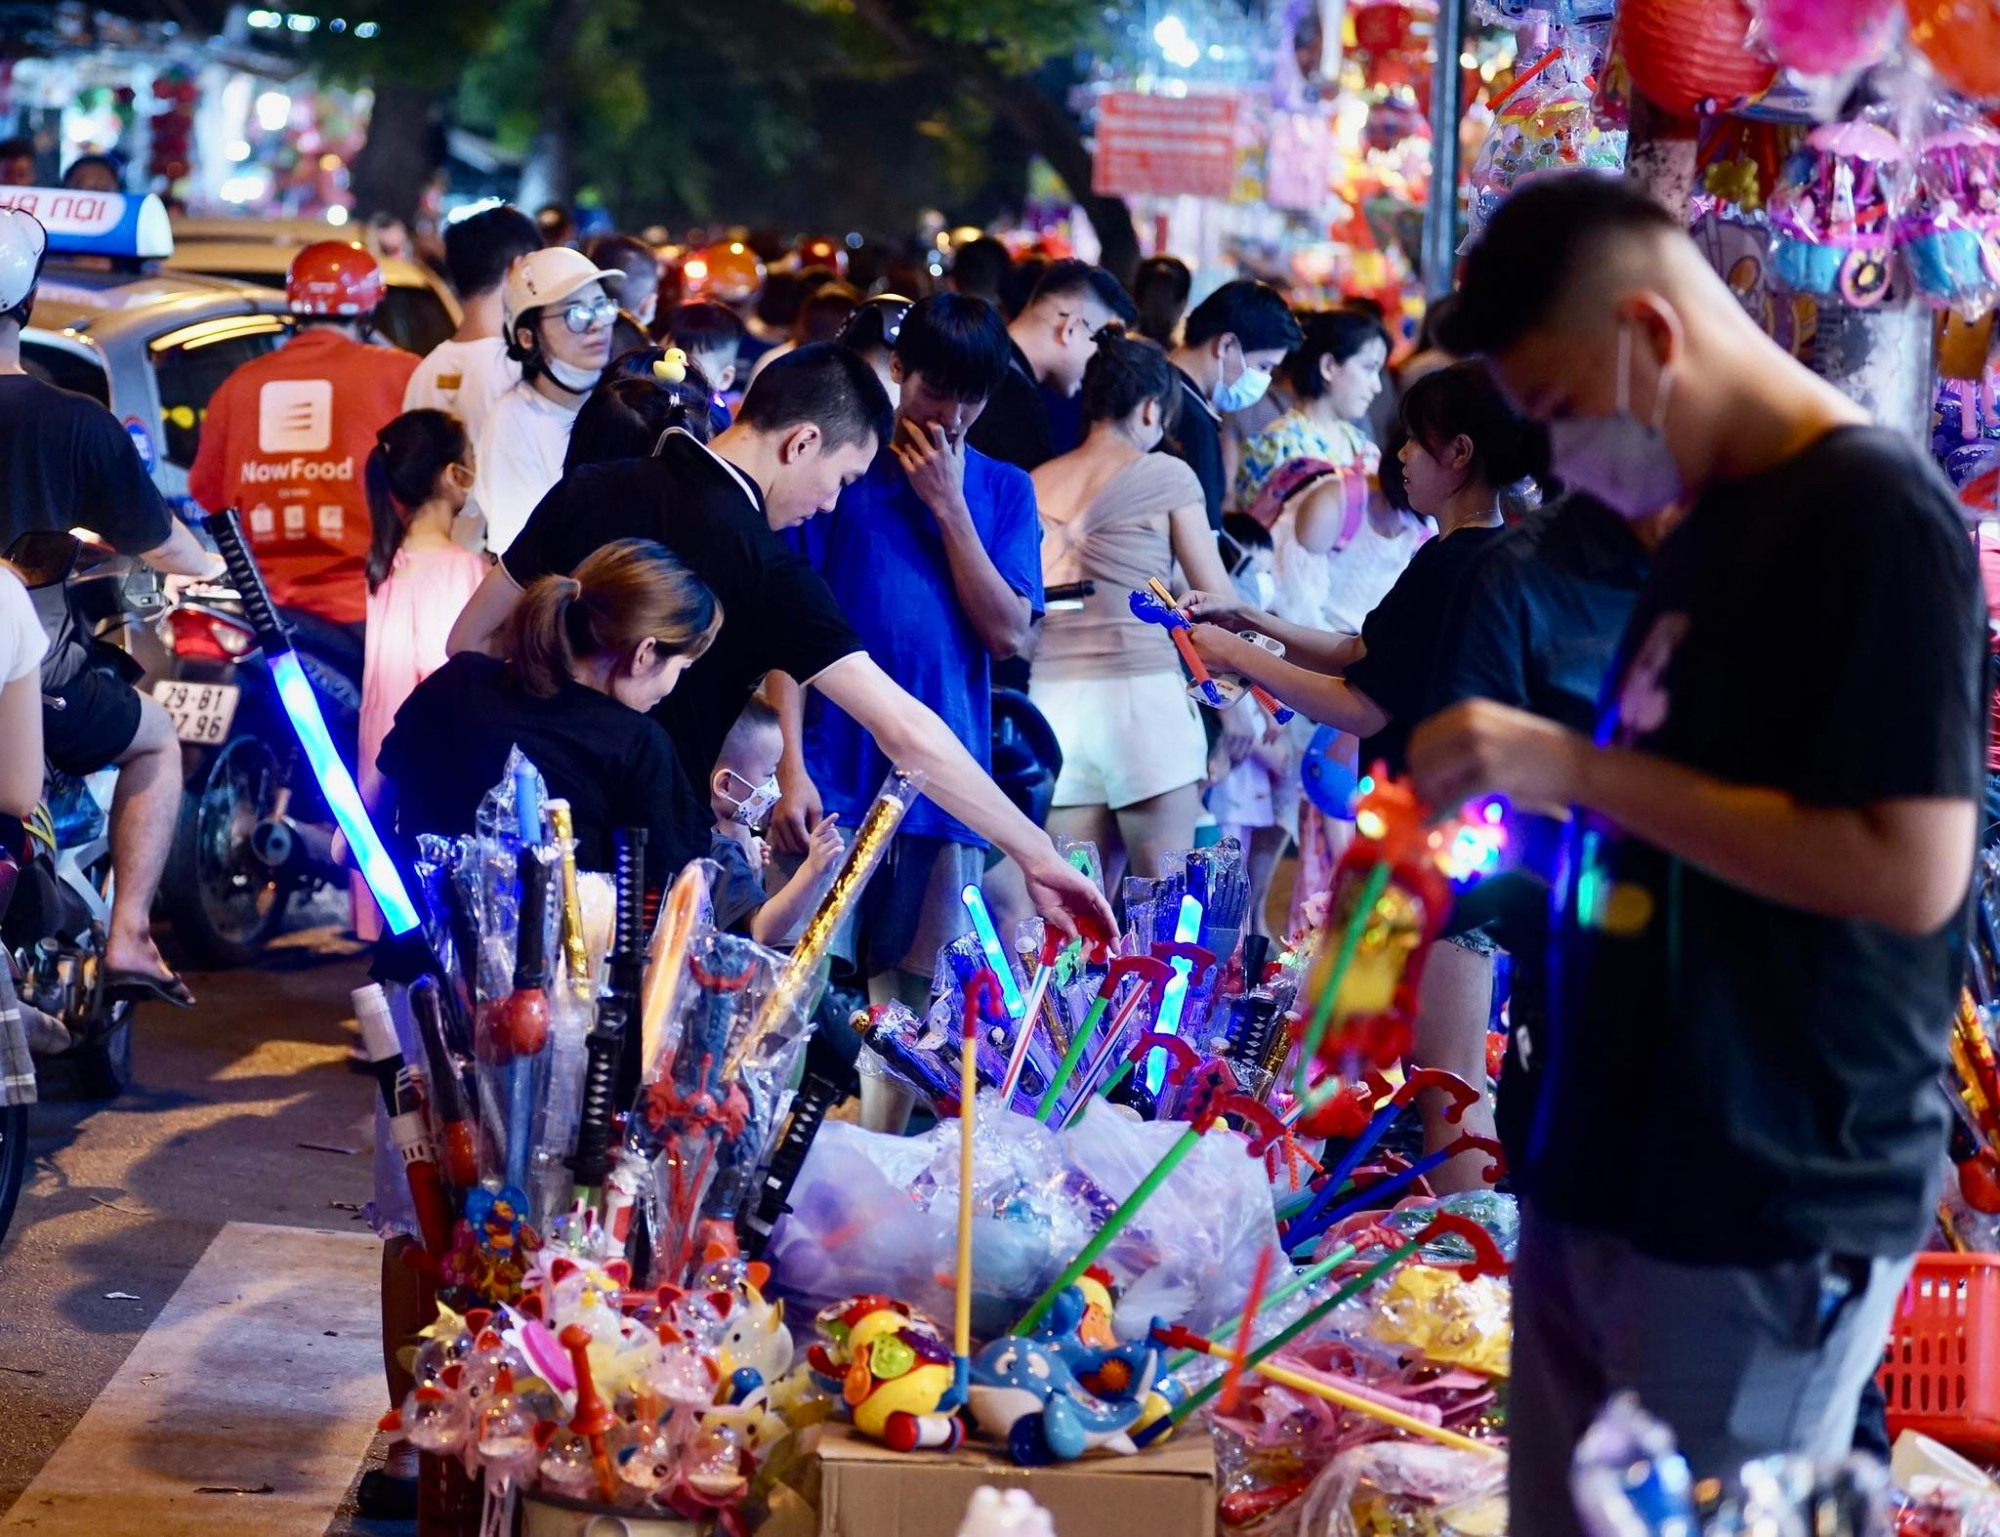 Ghi nhận tại tuyến phố được coi là chợ đồ chơi lớn nhất Hà Nội những ngày vừa qua cho thấy đồ chơi truyền thống gần như “vắng bóng”. 